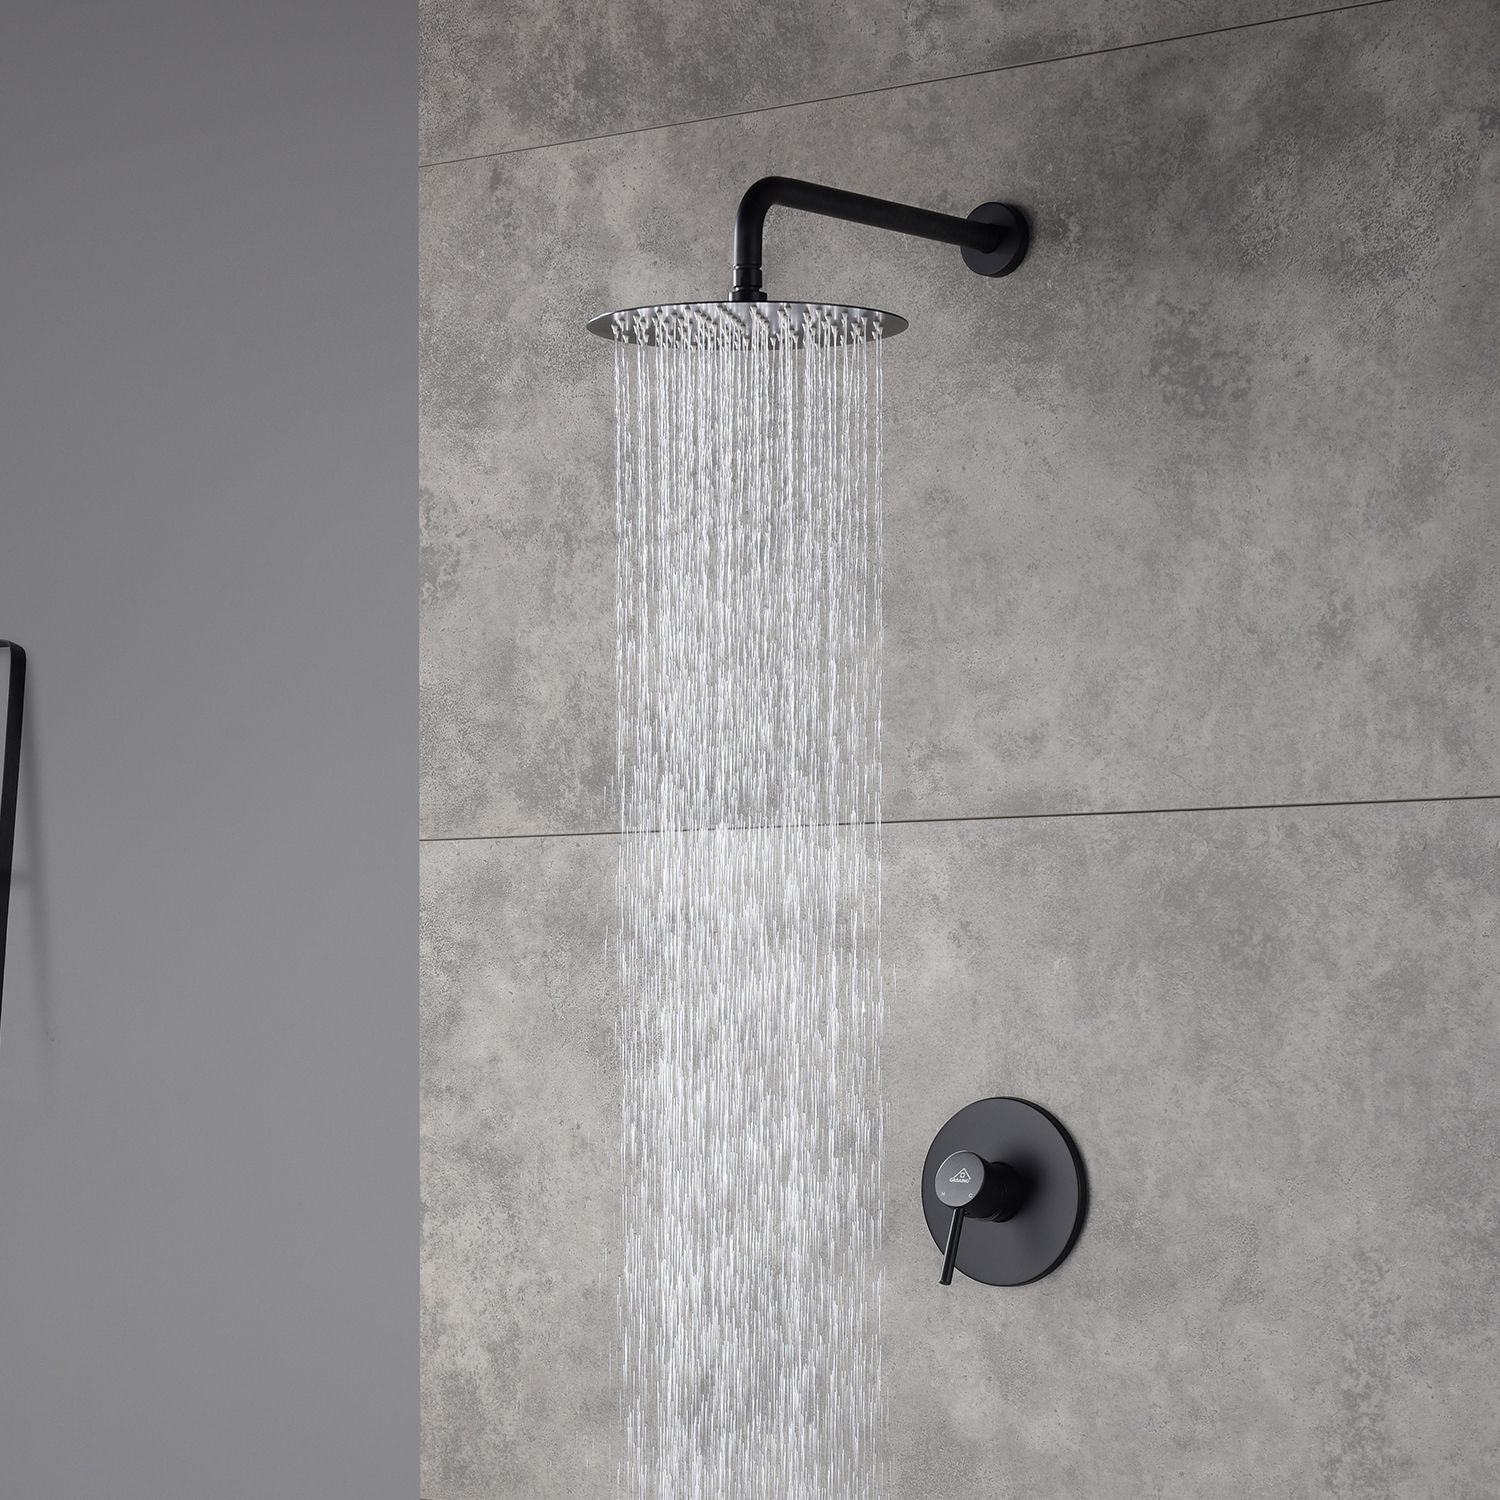 Casainc Round Single Functions Wall Mount Black Shower Faucet-CASAINC